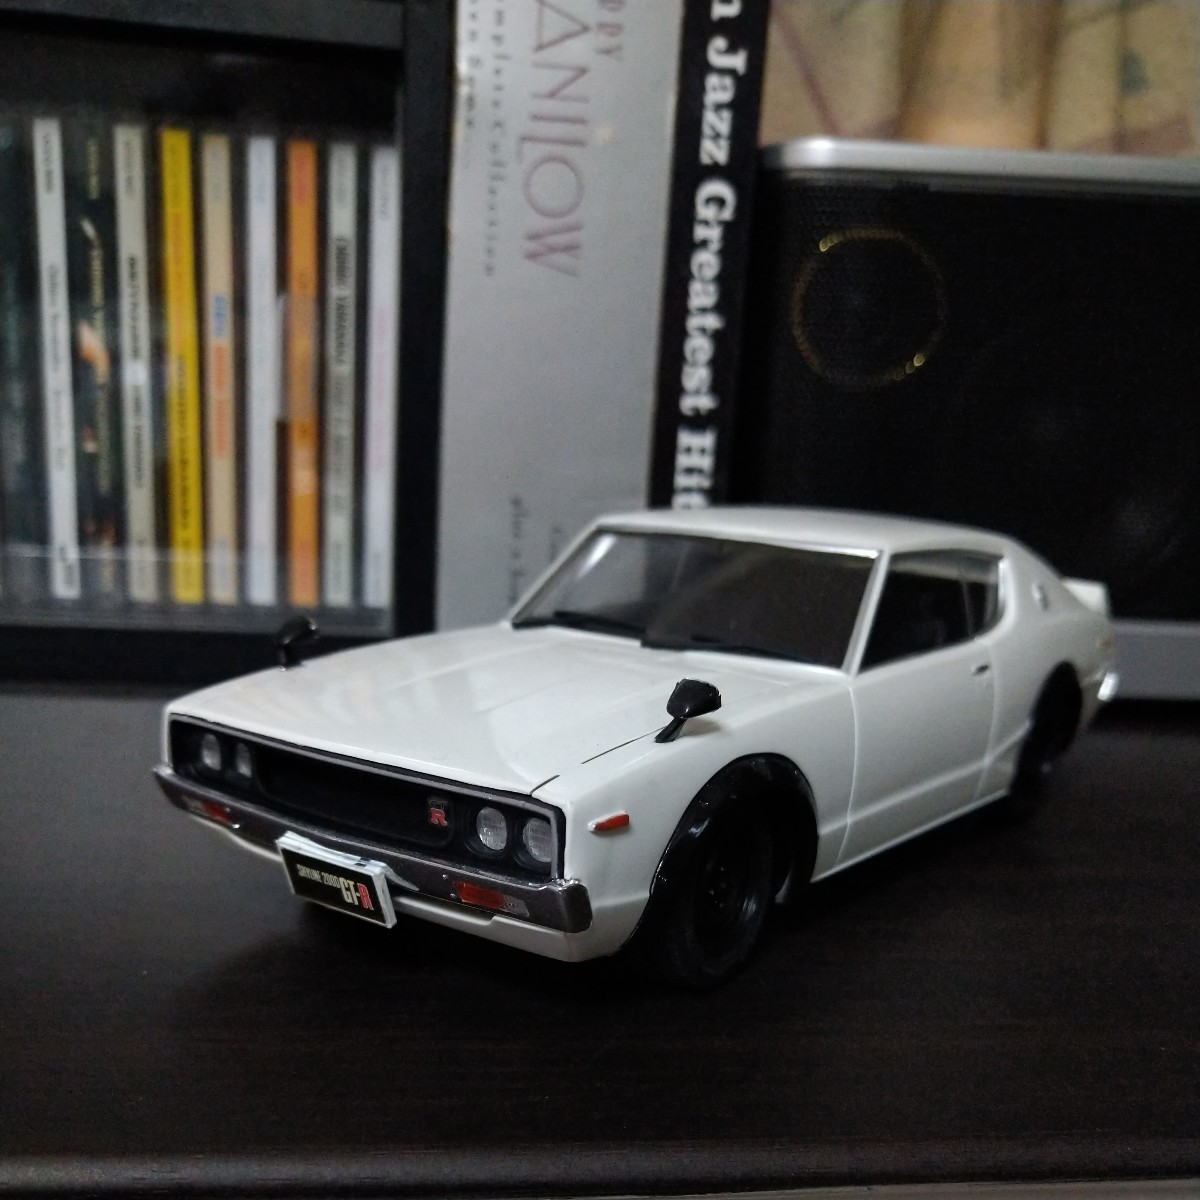  конечный продукт Ниссан Skyline GT-R белый 1973 год 